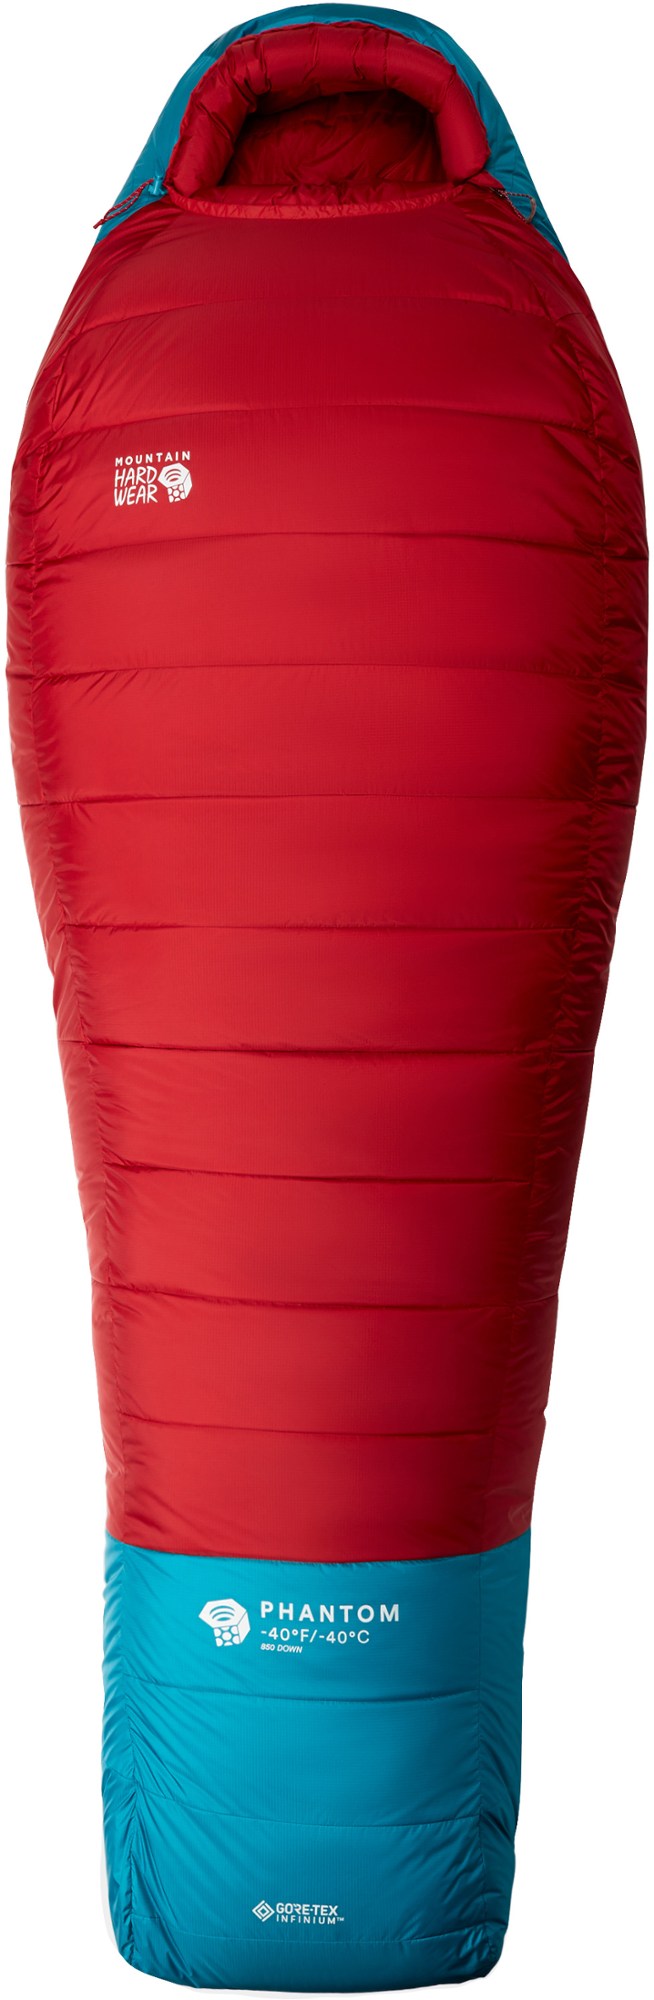 Спальный мешок Phantom GORE-TEX -40 Mountain Hardwear, красный спальный мешок чайка large250